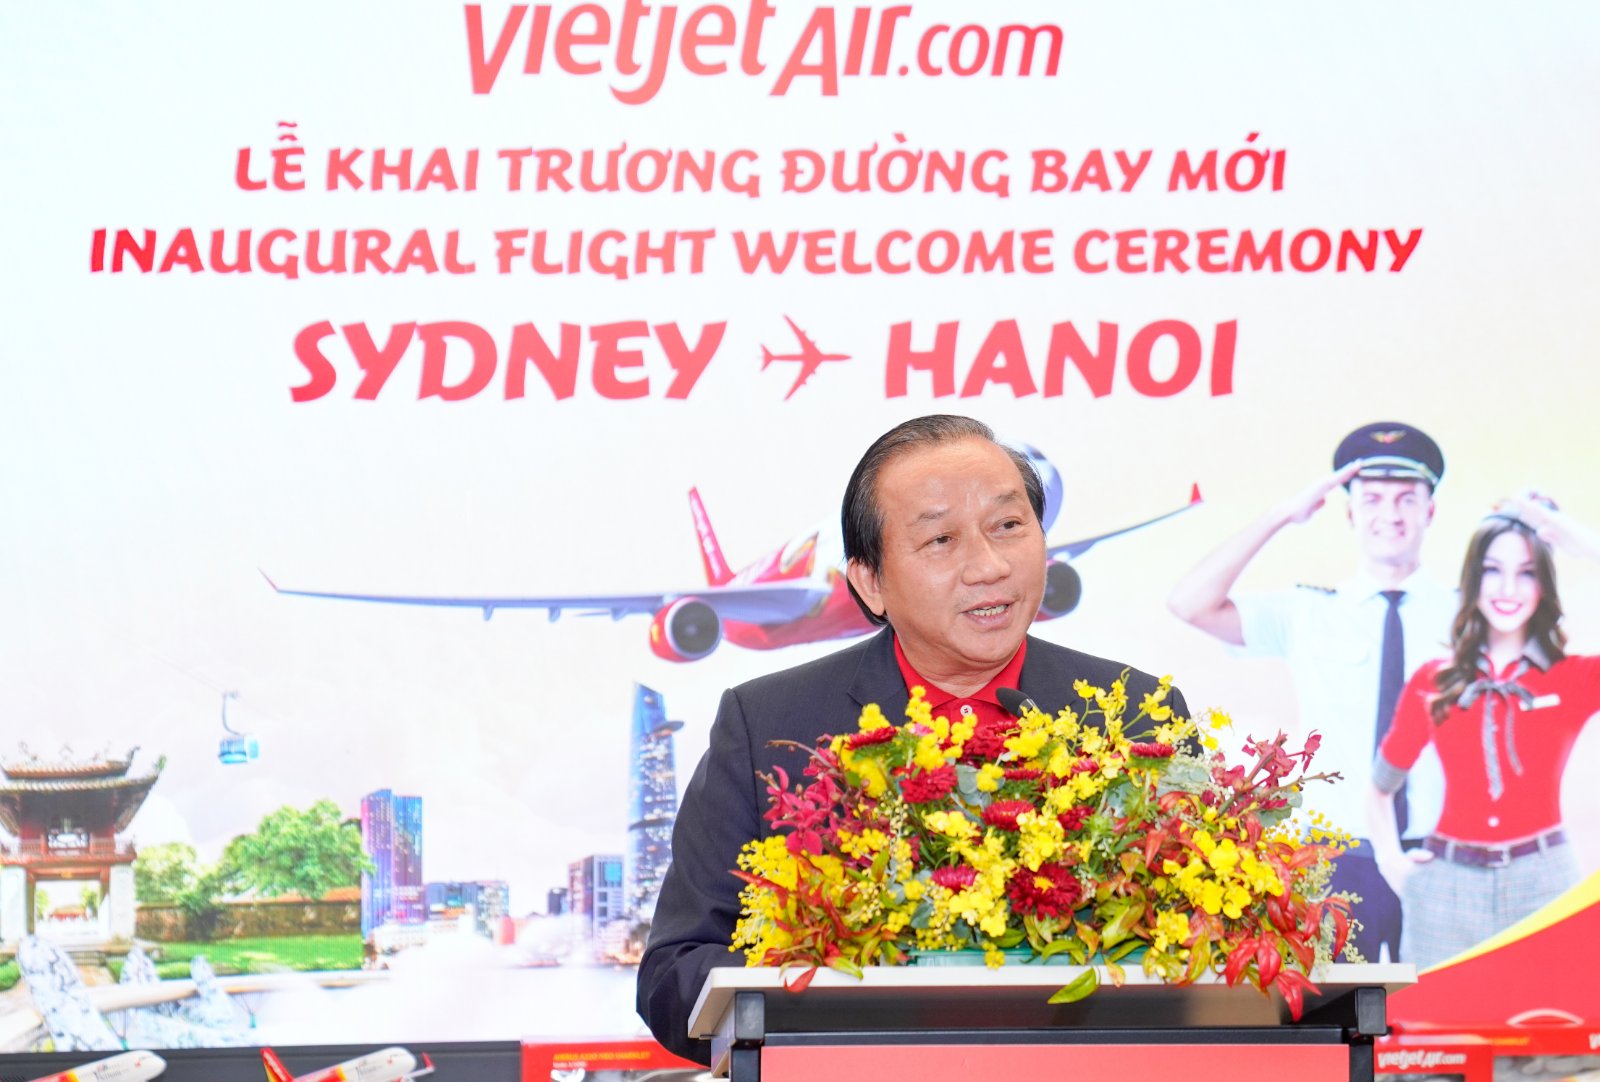 Phó Tổng Giám đốc Vietjet Đỗ Xuân Quang công bố khai trương đường bay thứ 7 kết nối nối Australia - Việt Nam của Vietjet